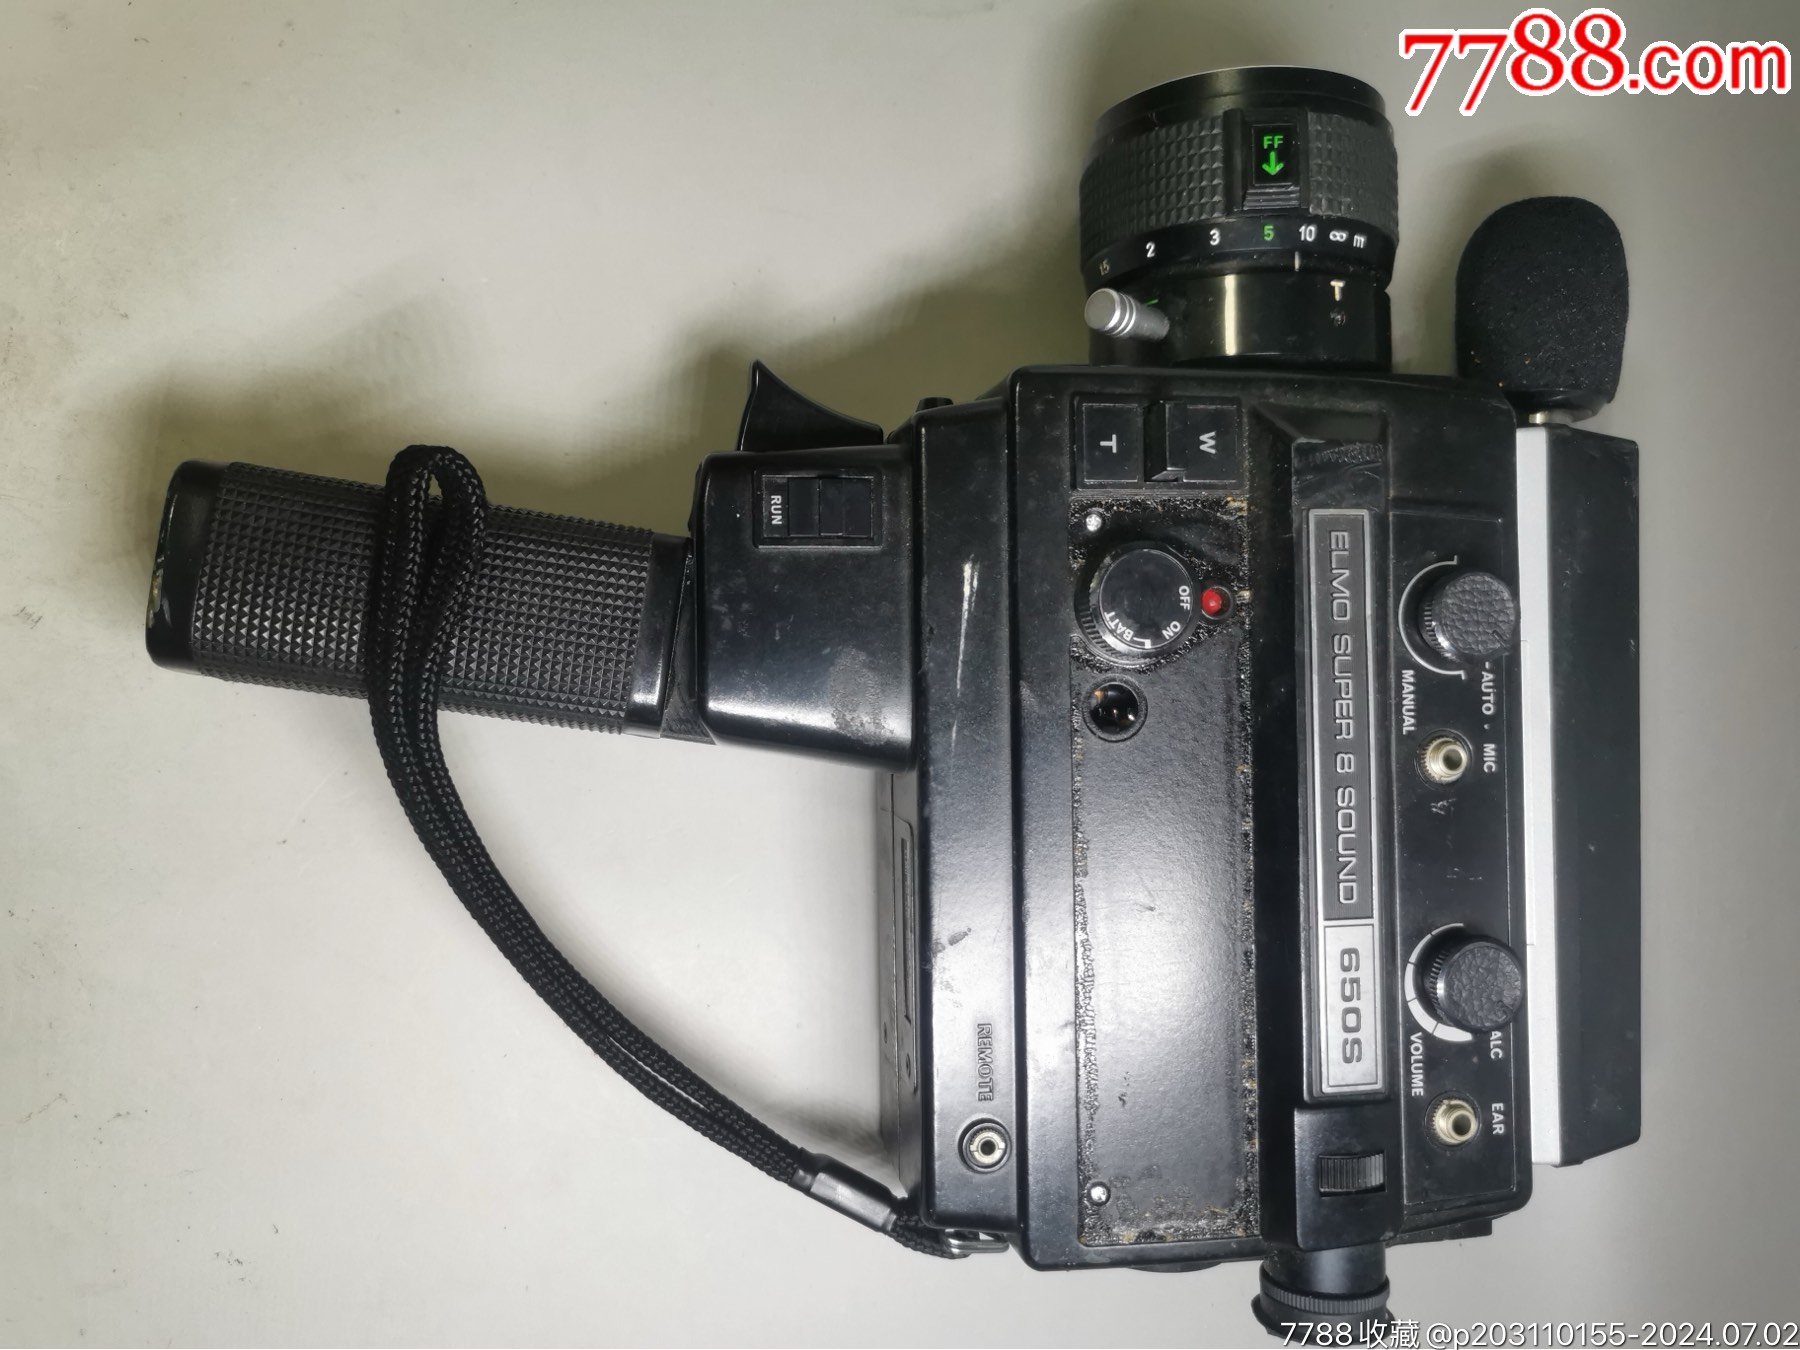 1￥508品99电影摄影机富士p300single8毫米胶片电影摄影机,日本制造